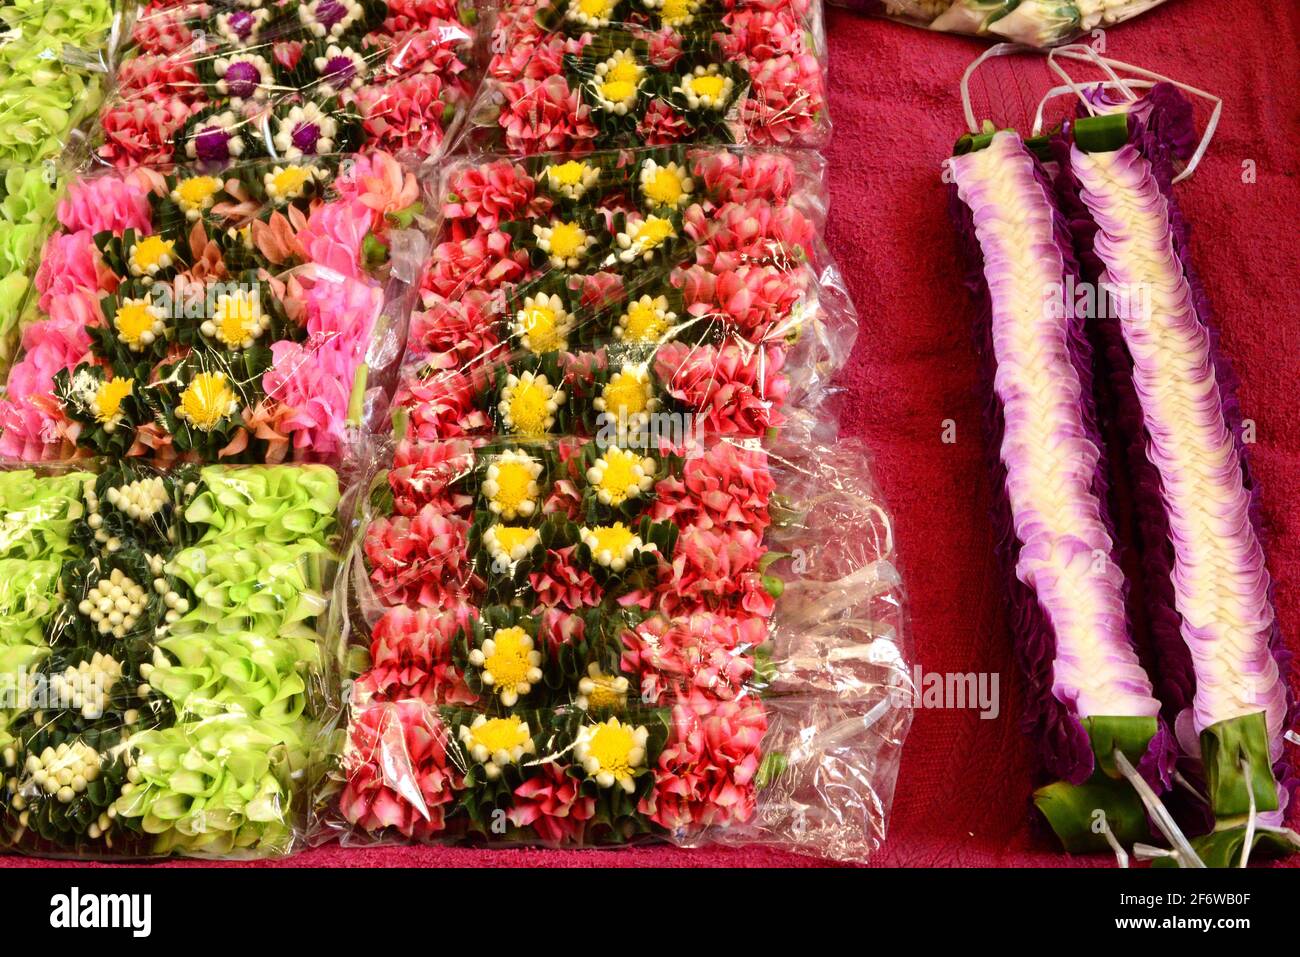 Bangkok, Flowers market. Thailand. Stock Photo